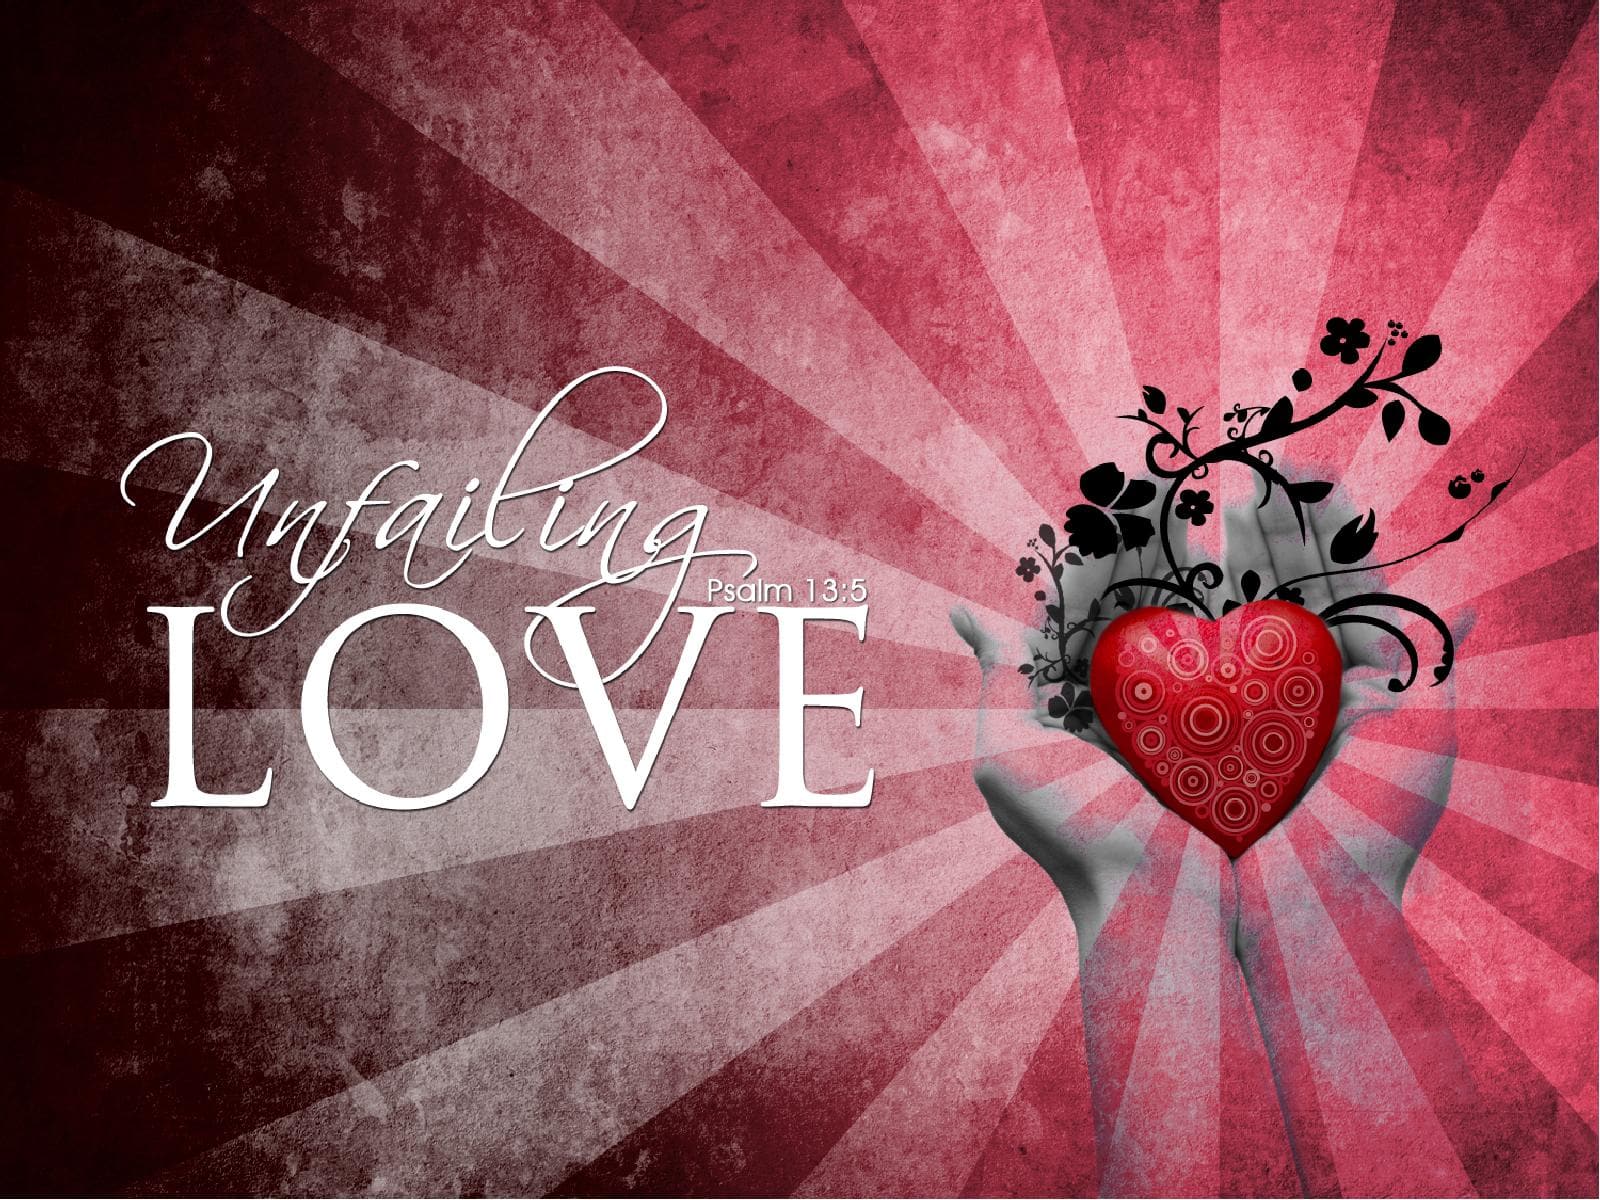 ShareFaith Media » Your Love Never Fails Christian PowerPoint – ShareFaith  Media